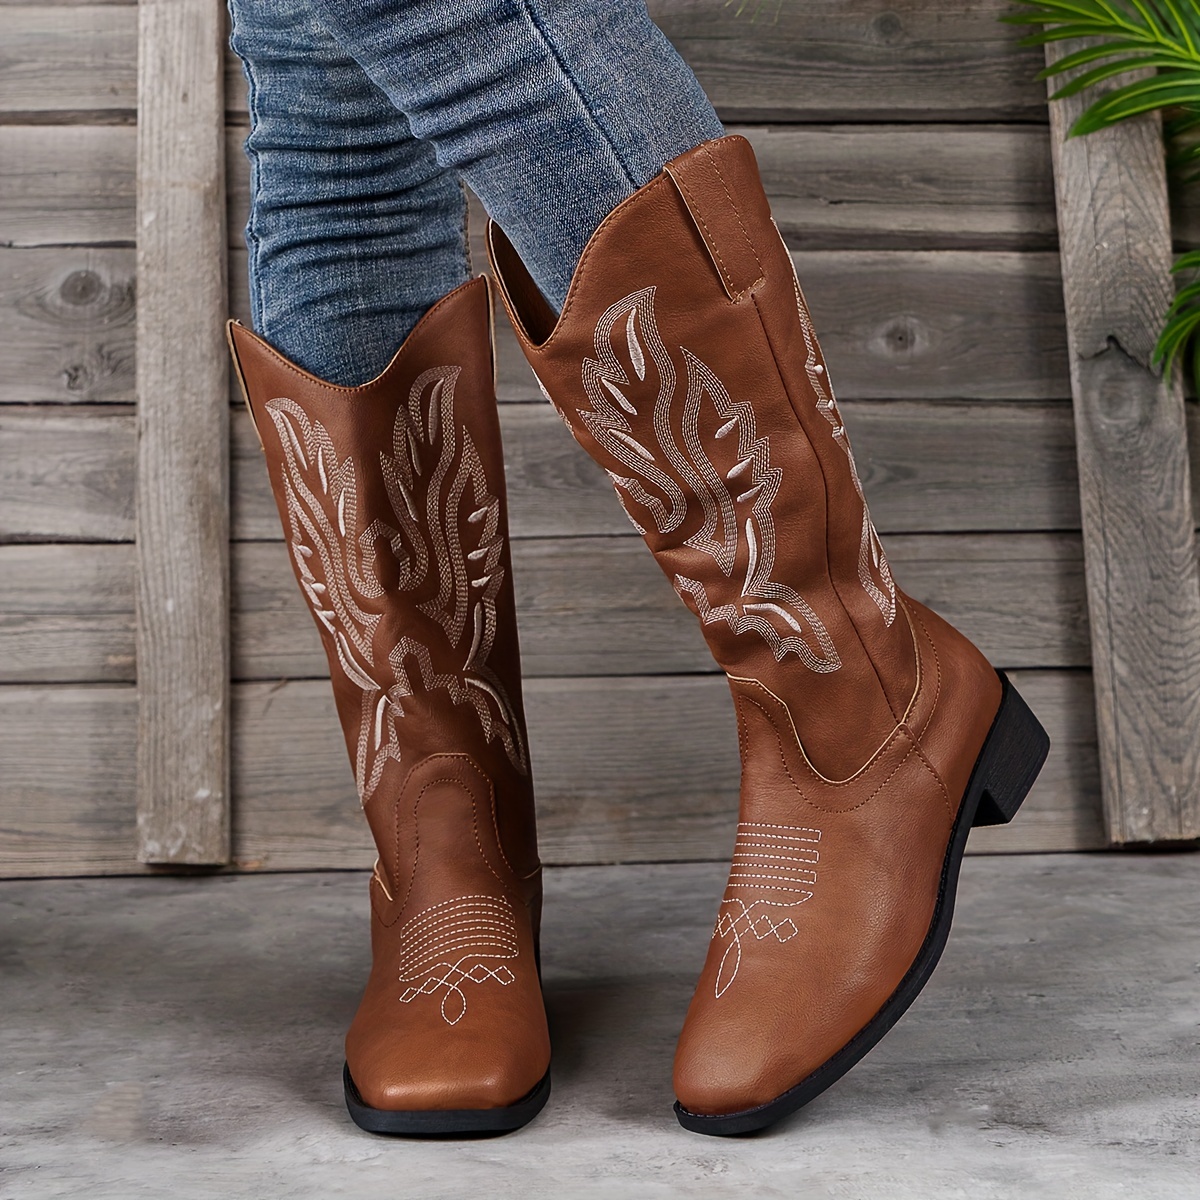 Botas para mujer con tachuelas y borlas, estilo vaquero occidental, zapatos  ecuestres de equitación, tacón grueso, botas altas vintage, botas de moda